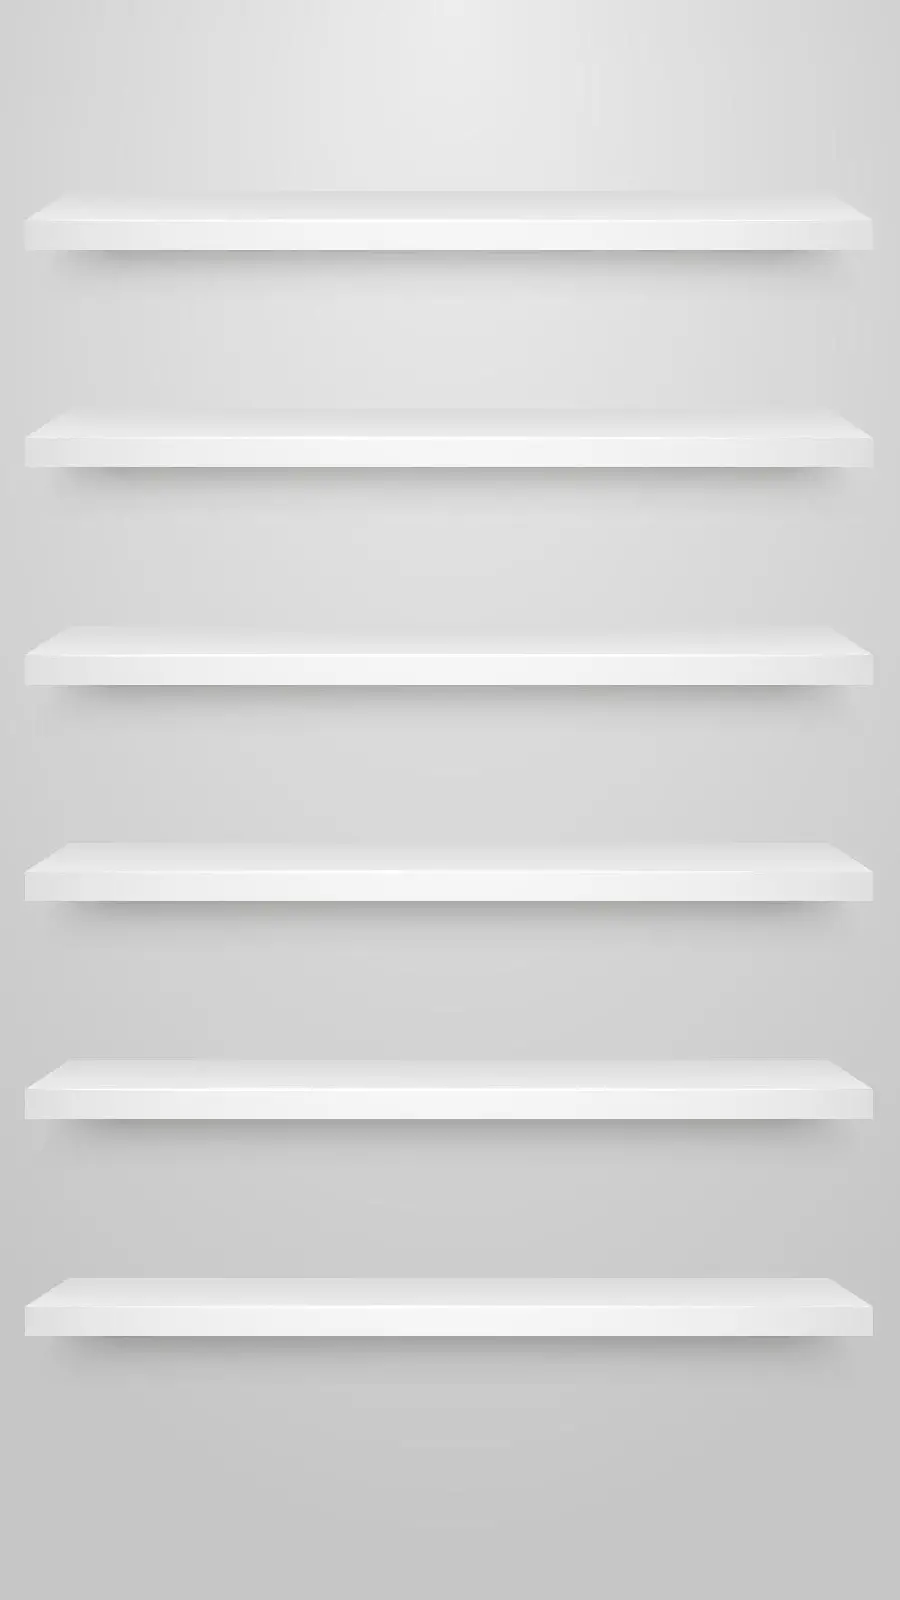 تصویر زمینه سفید از طاقچه برای موبایل سامسونگ